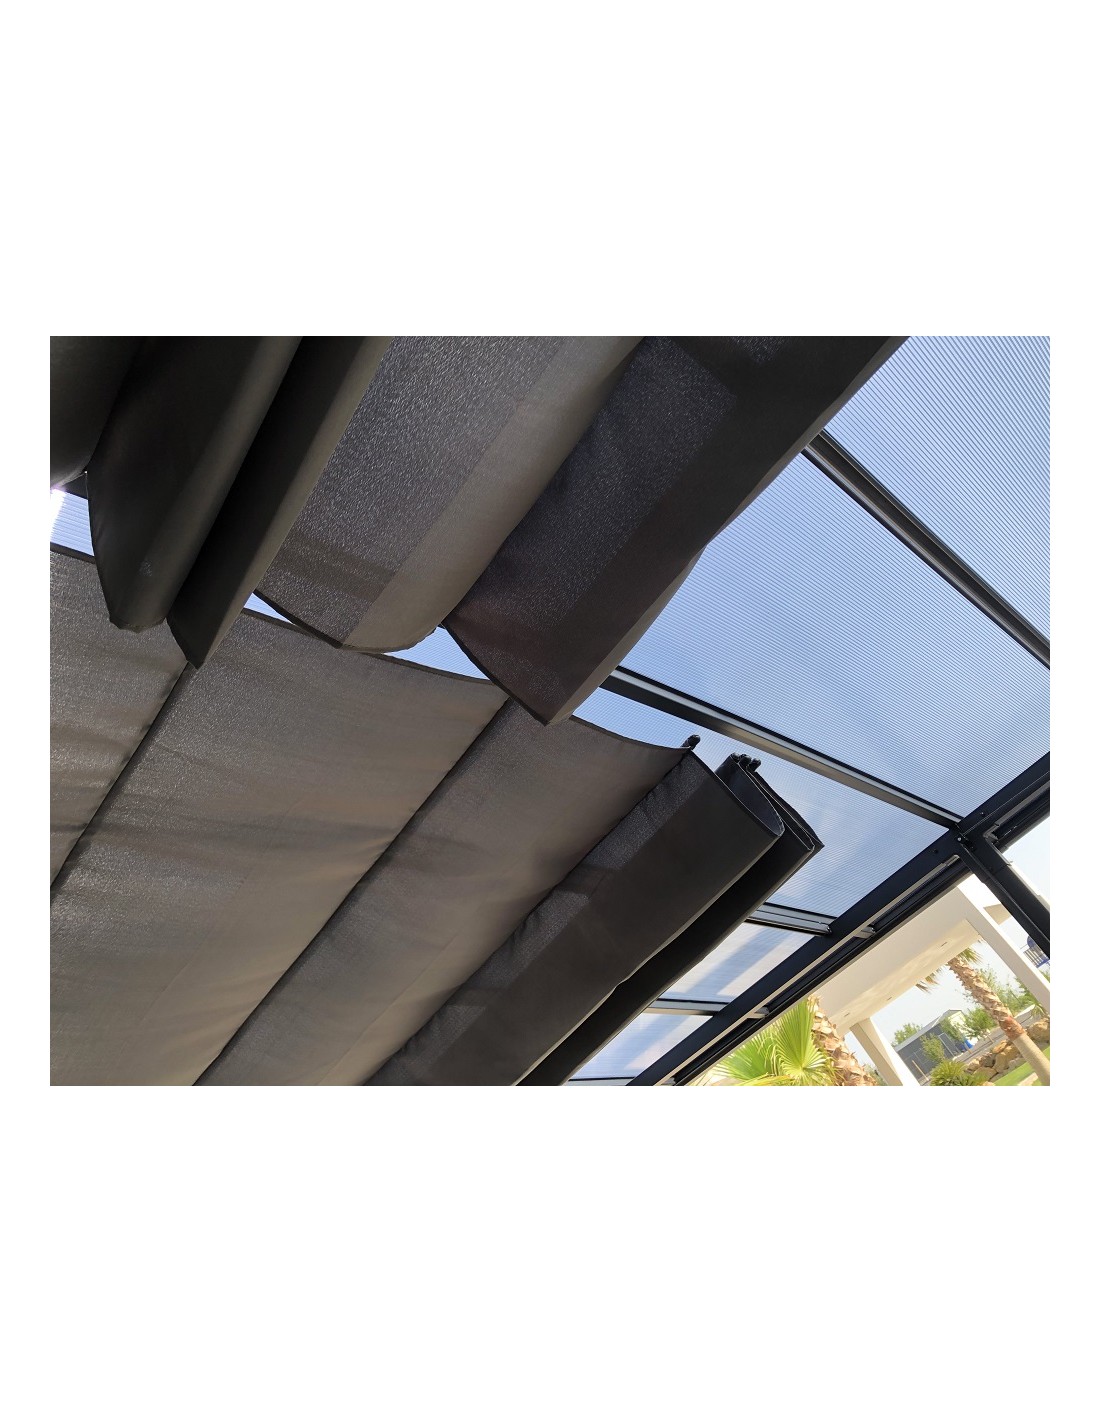 Remplacement Référence Pour Pergola Cadiz 4x3m toit de protection solaire crème 